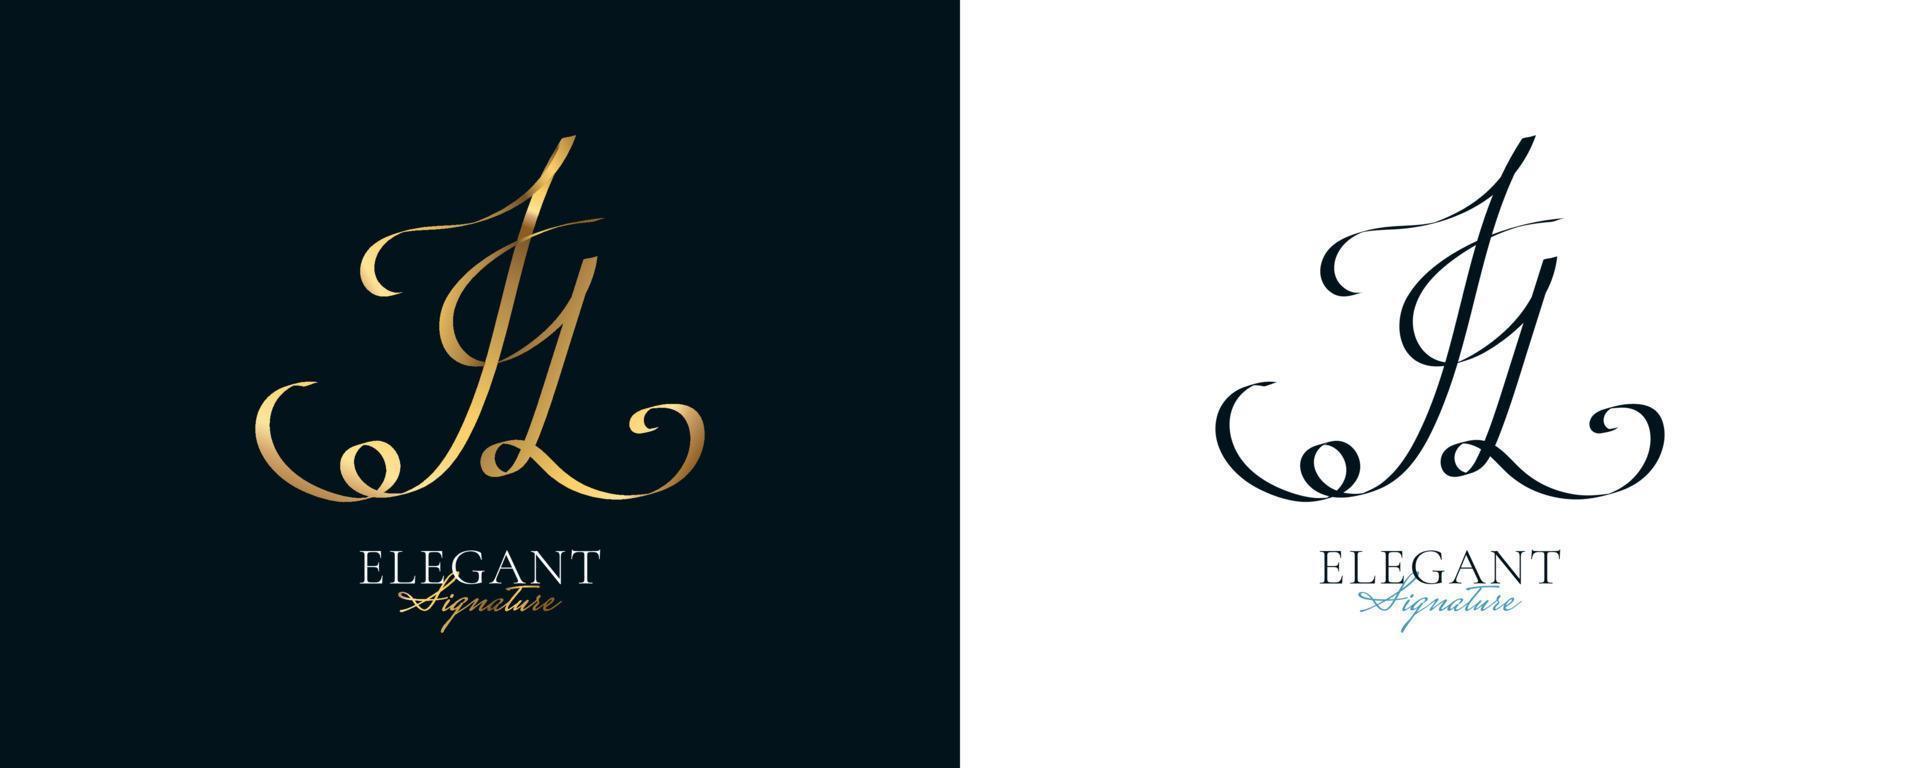 création de logo de signature initiale jq avec un style d'écriture doré élégant et minimaliste. création initiale du logo j et q pour le mariage, la mode, les bijoux, la boutique et l'identité de la marque d'entreprise vecteur